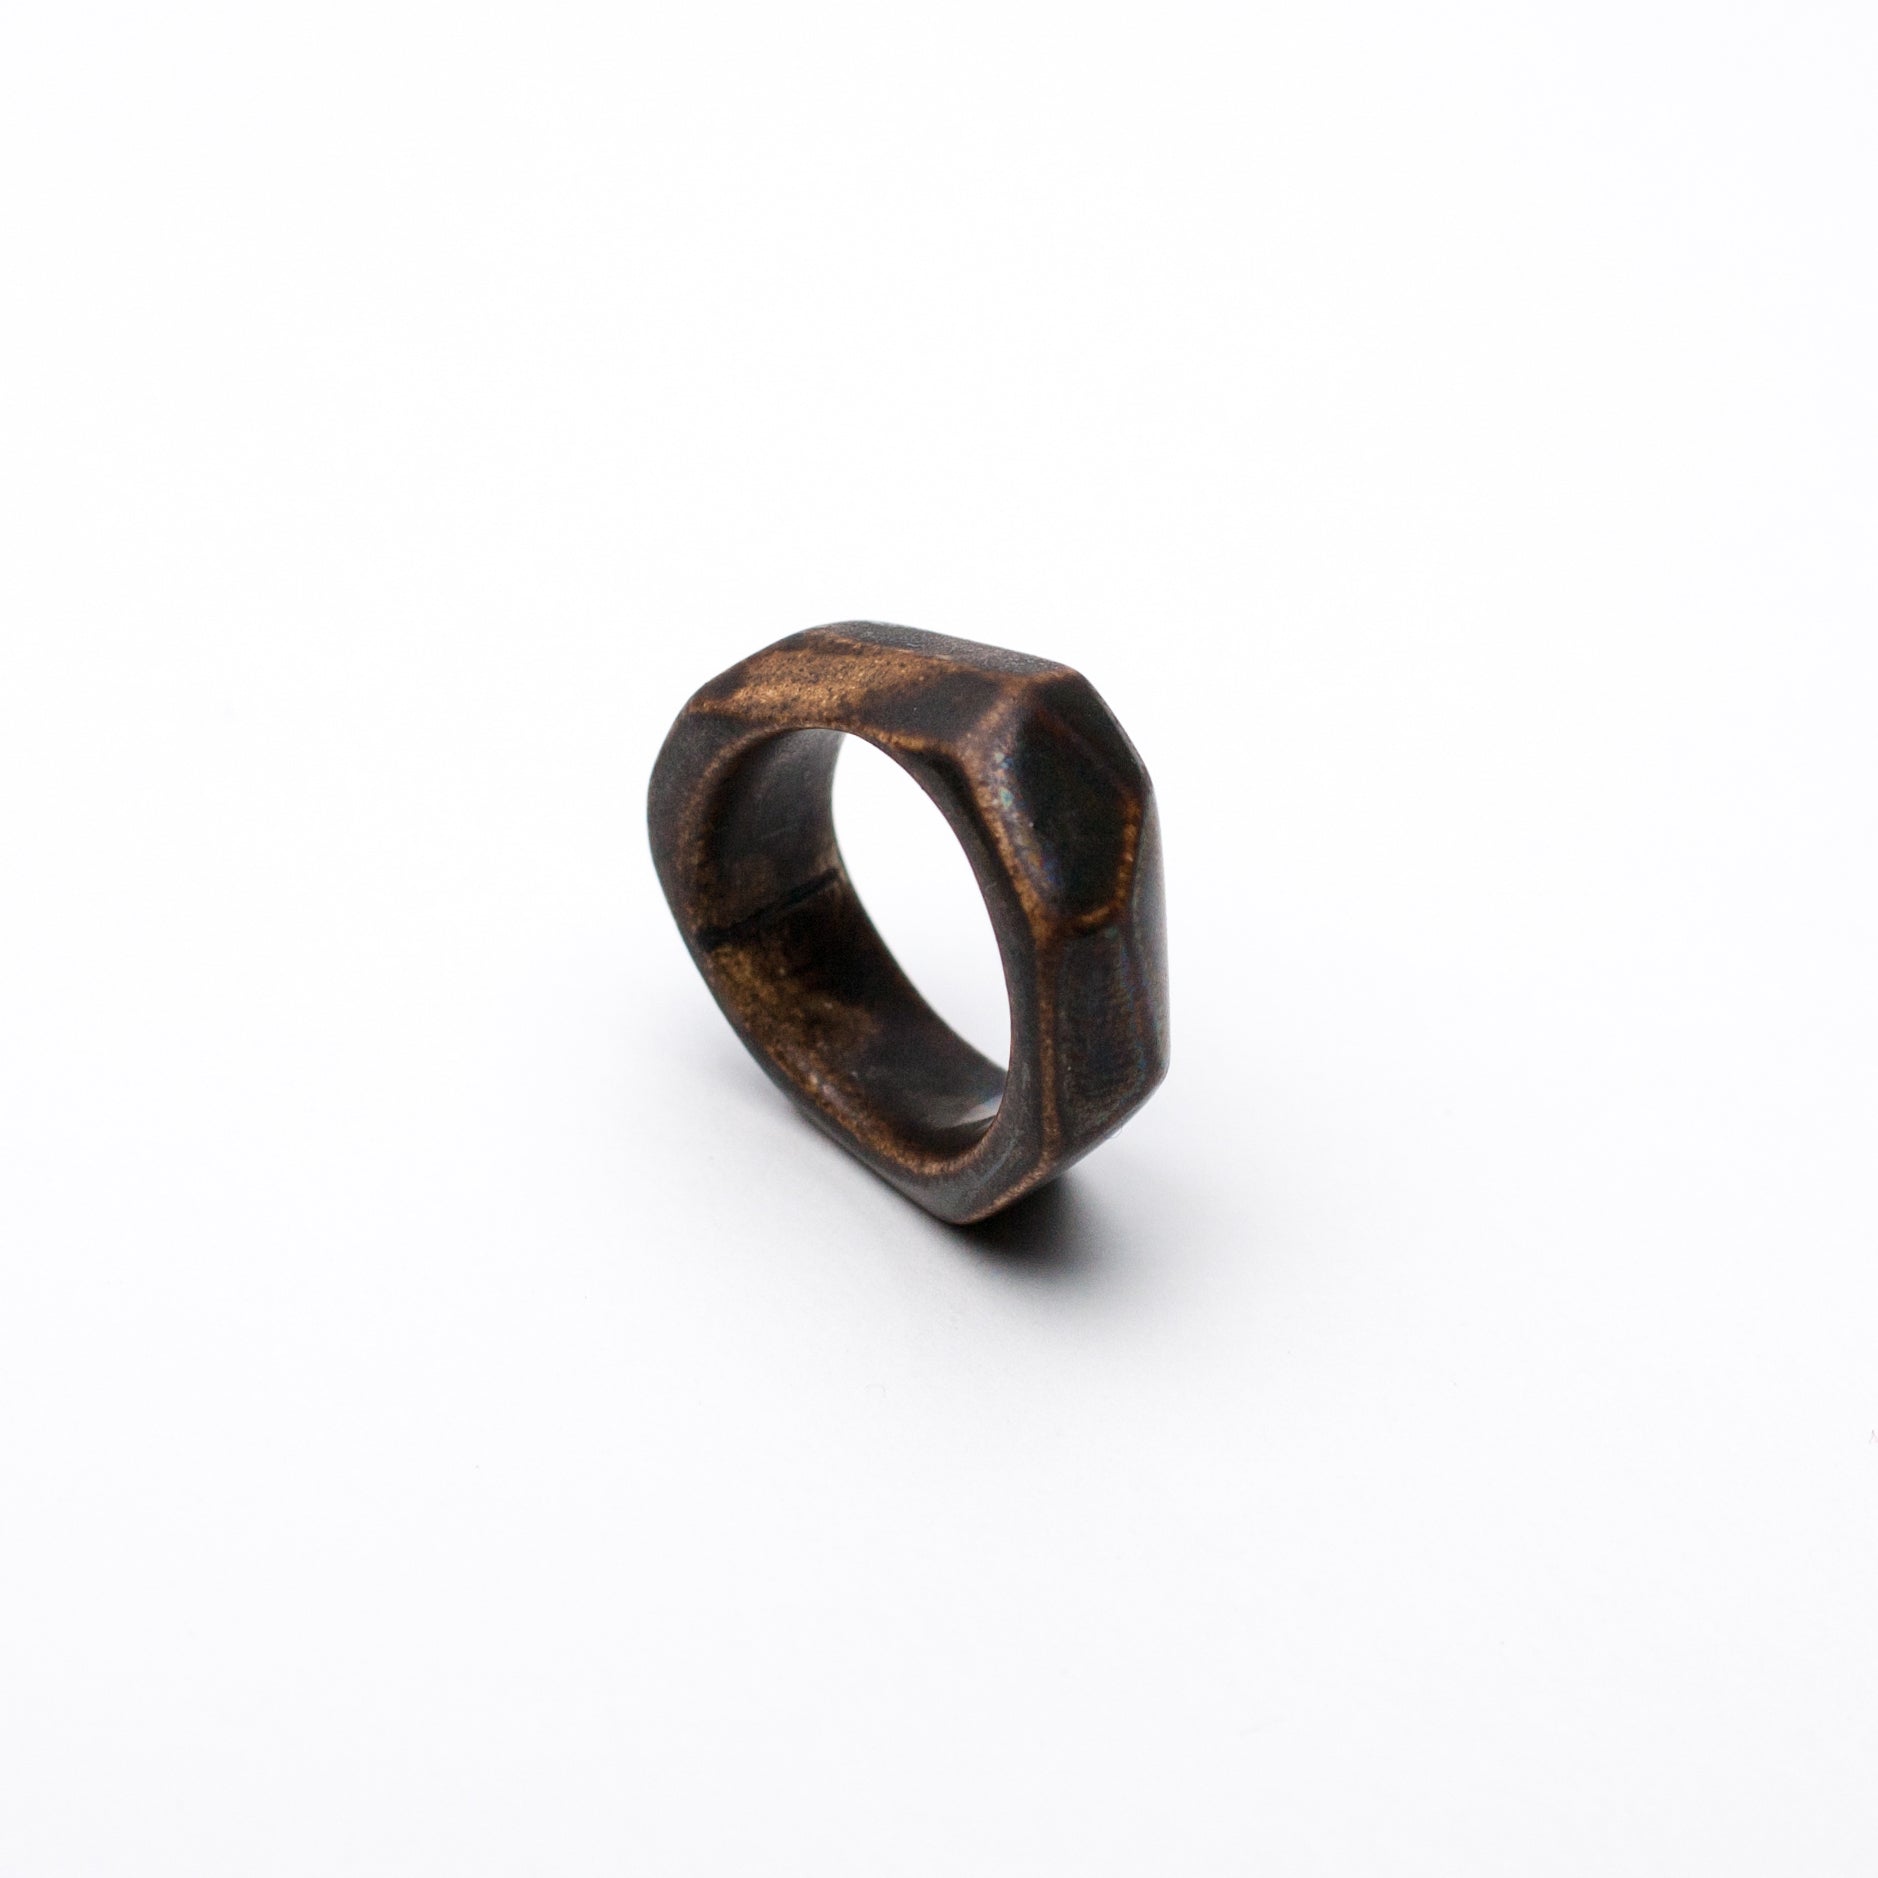 Ceramic ring Arke size 15.5